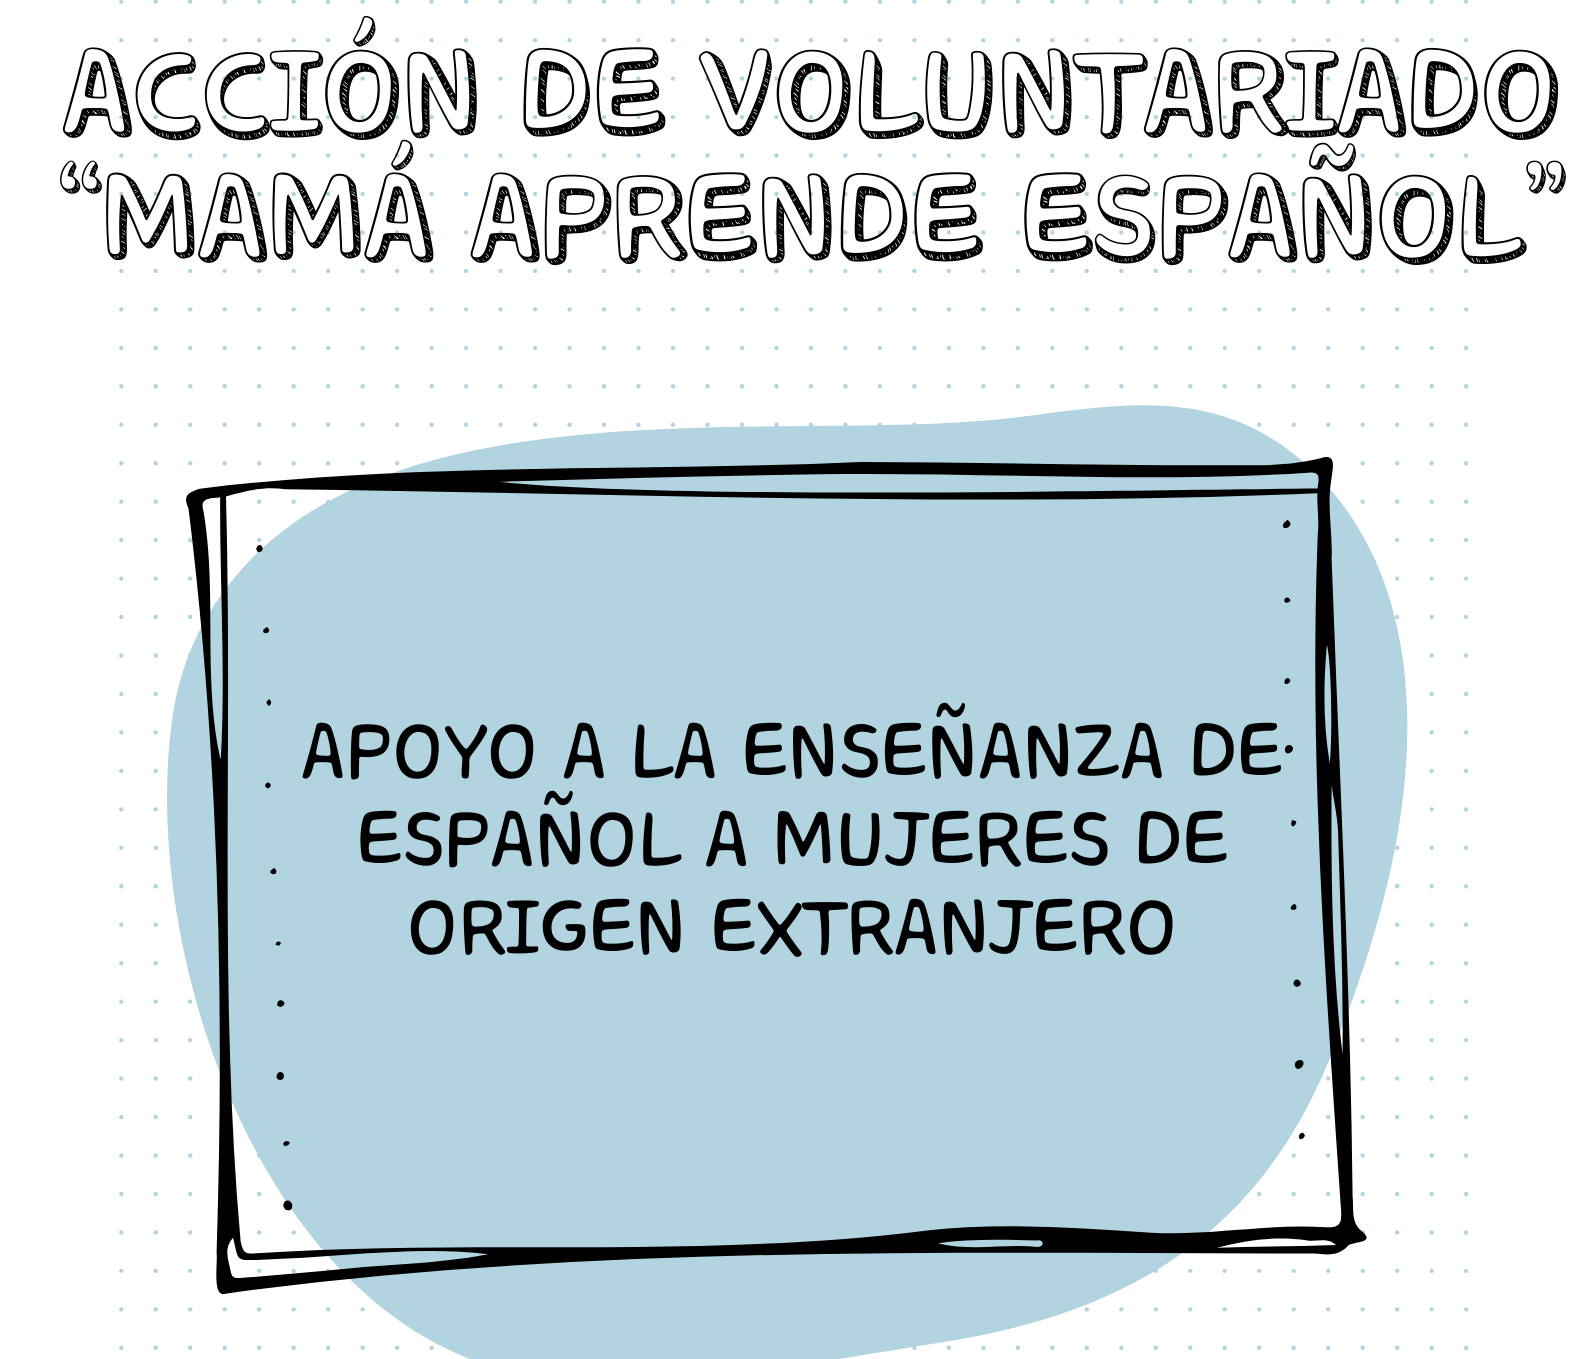 Acción Voluntaria "Mamá aprende español"